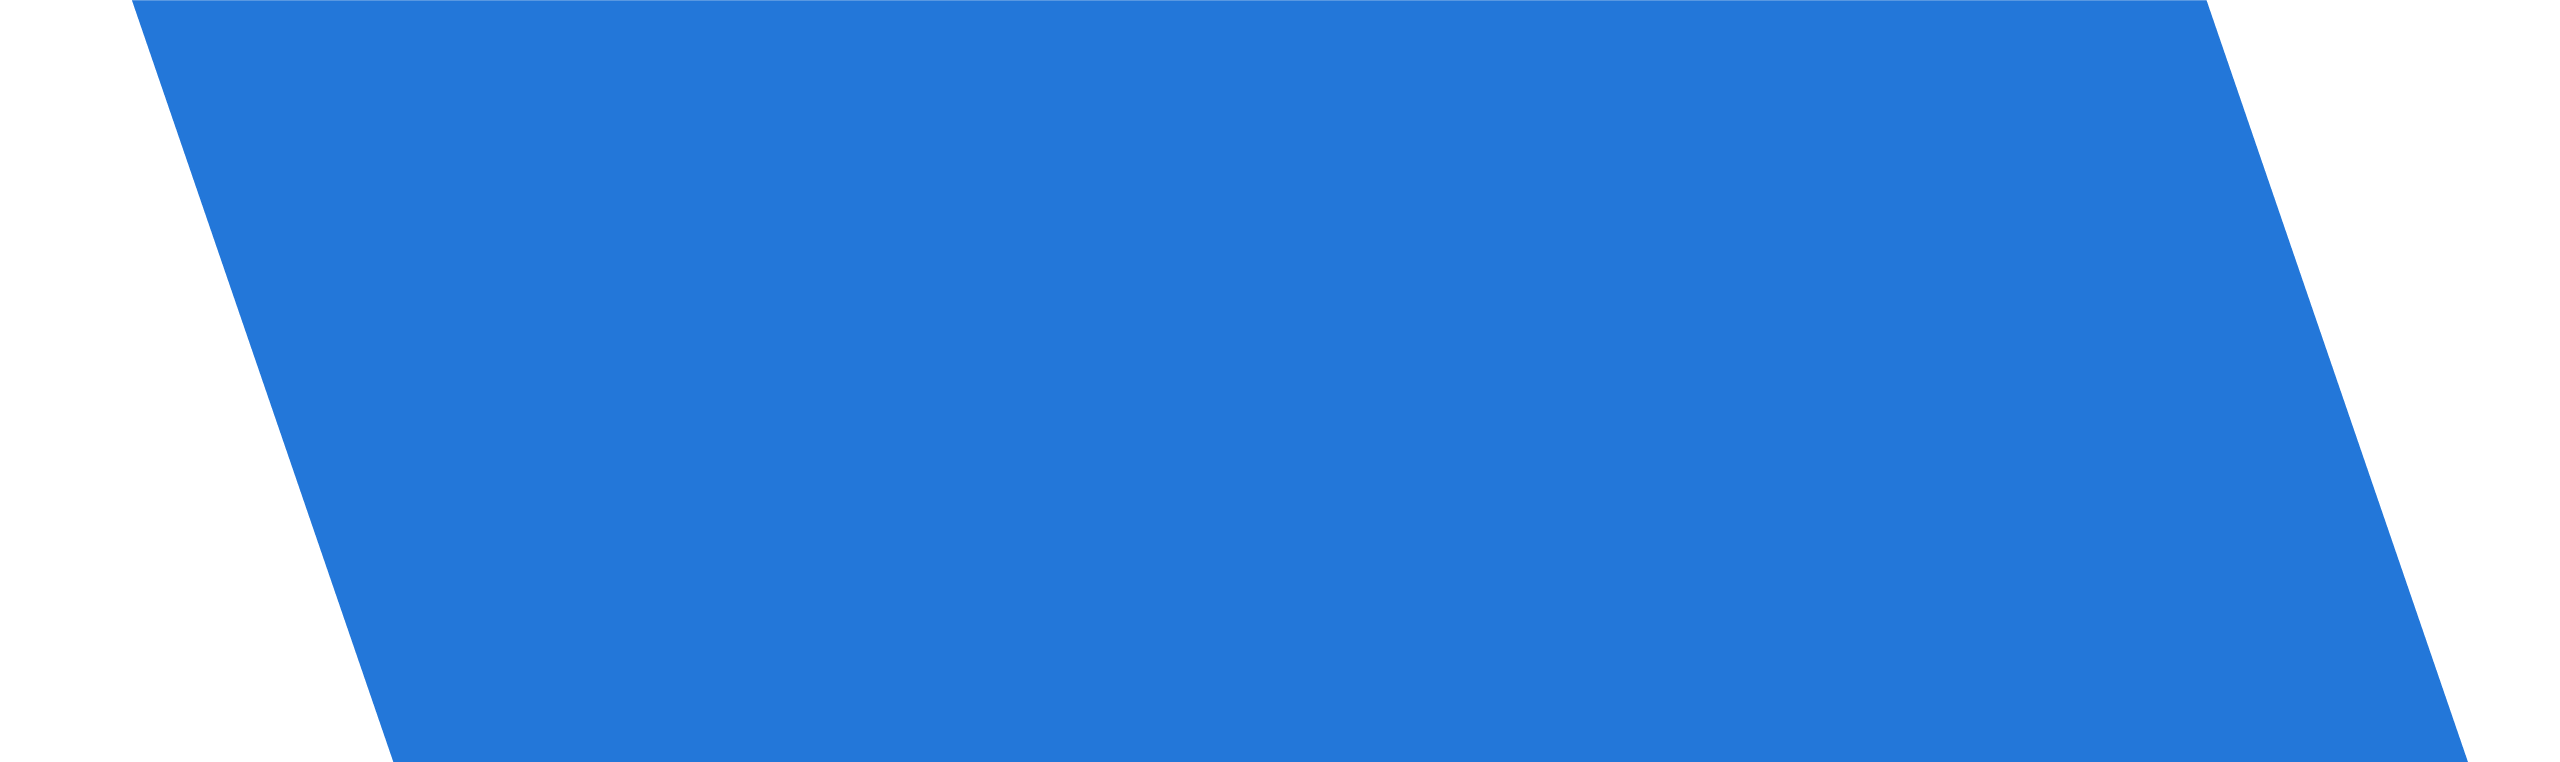 Blue Trapezoid Logo - Blue Trapezoid